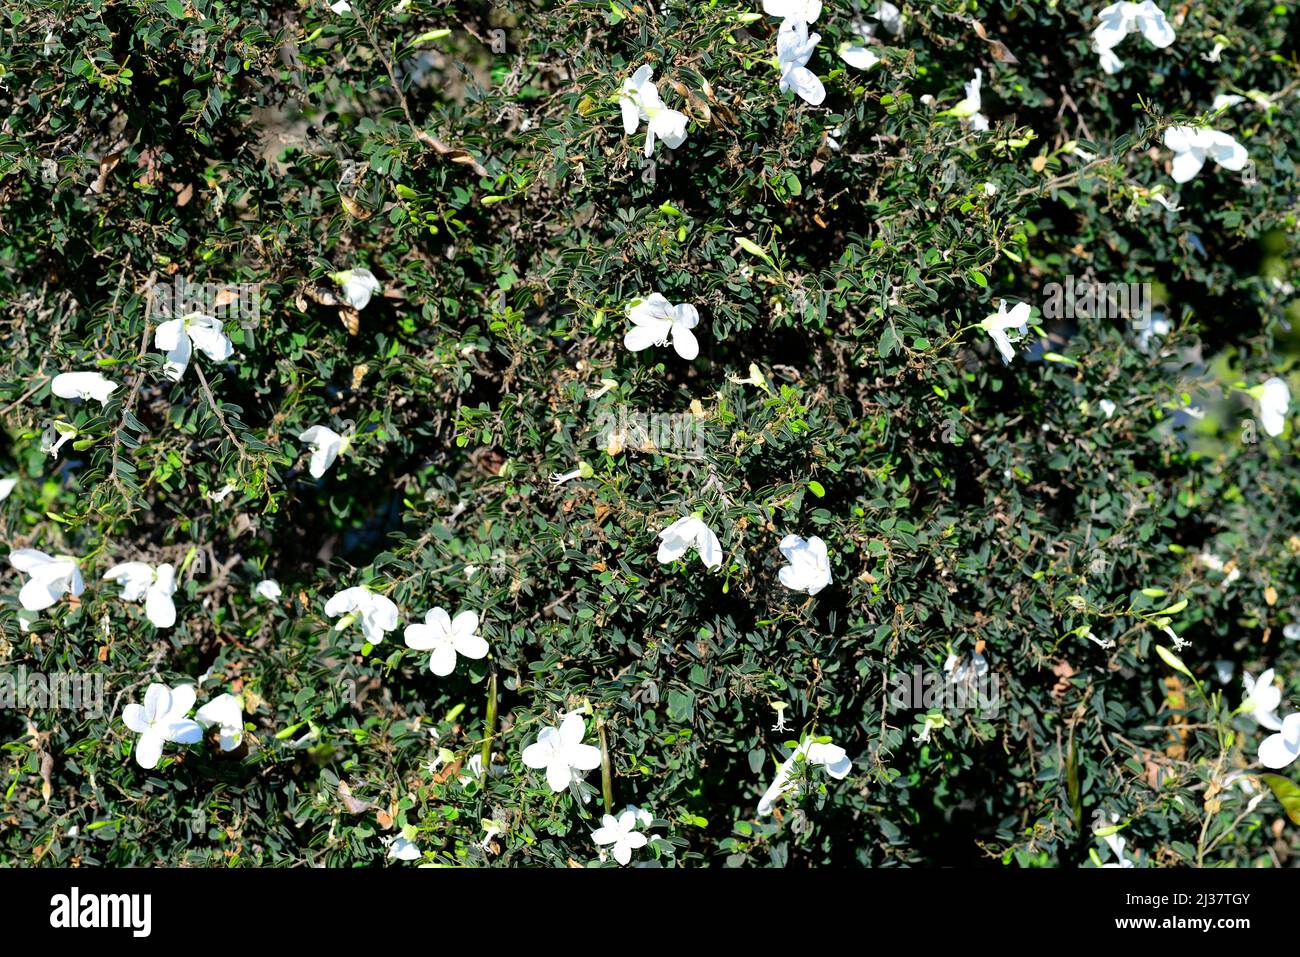 Natal bahuinia (Bahuinia natalensis) est un arbuste à feuilles persistantes originaire d'Afrique du Sud. Spécimen en fleurs. Banque D'Images